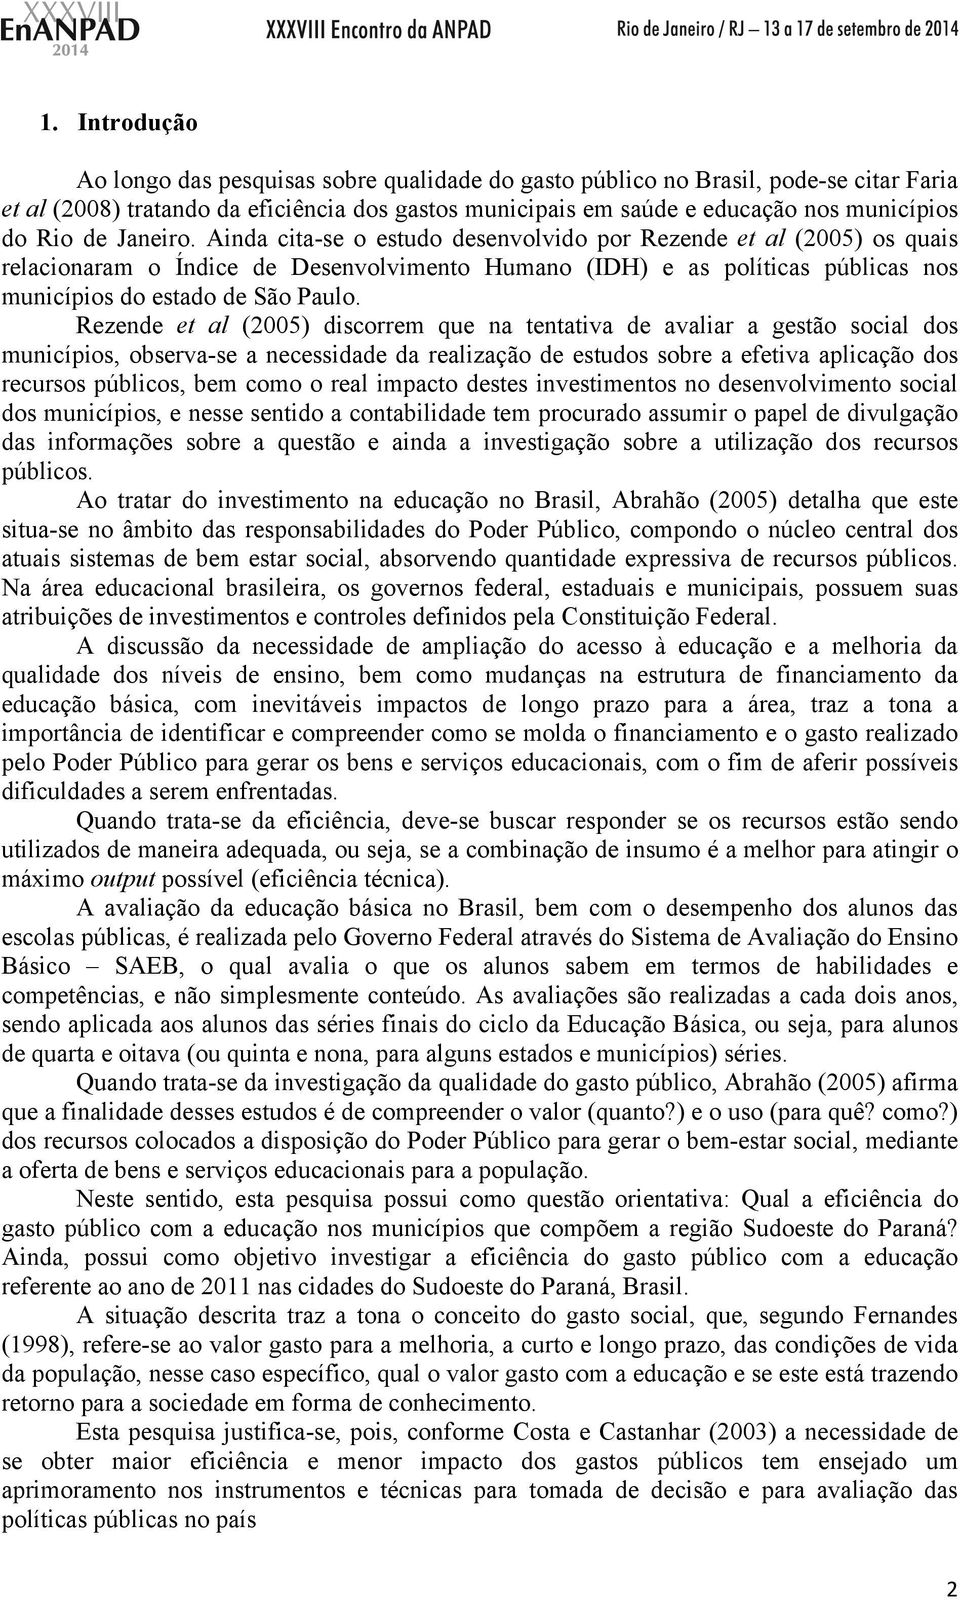 Ainda cita-se o estudo desenvolvido por Rezende et al (2005) os quais relacionaram o Índice de Desenvolvimento Humano (IDH) e as políticas públicas nos municípios do estado de São Paulo.